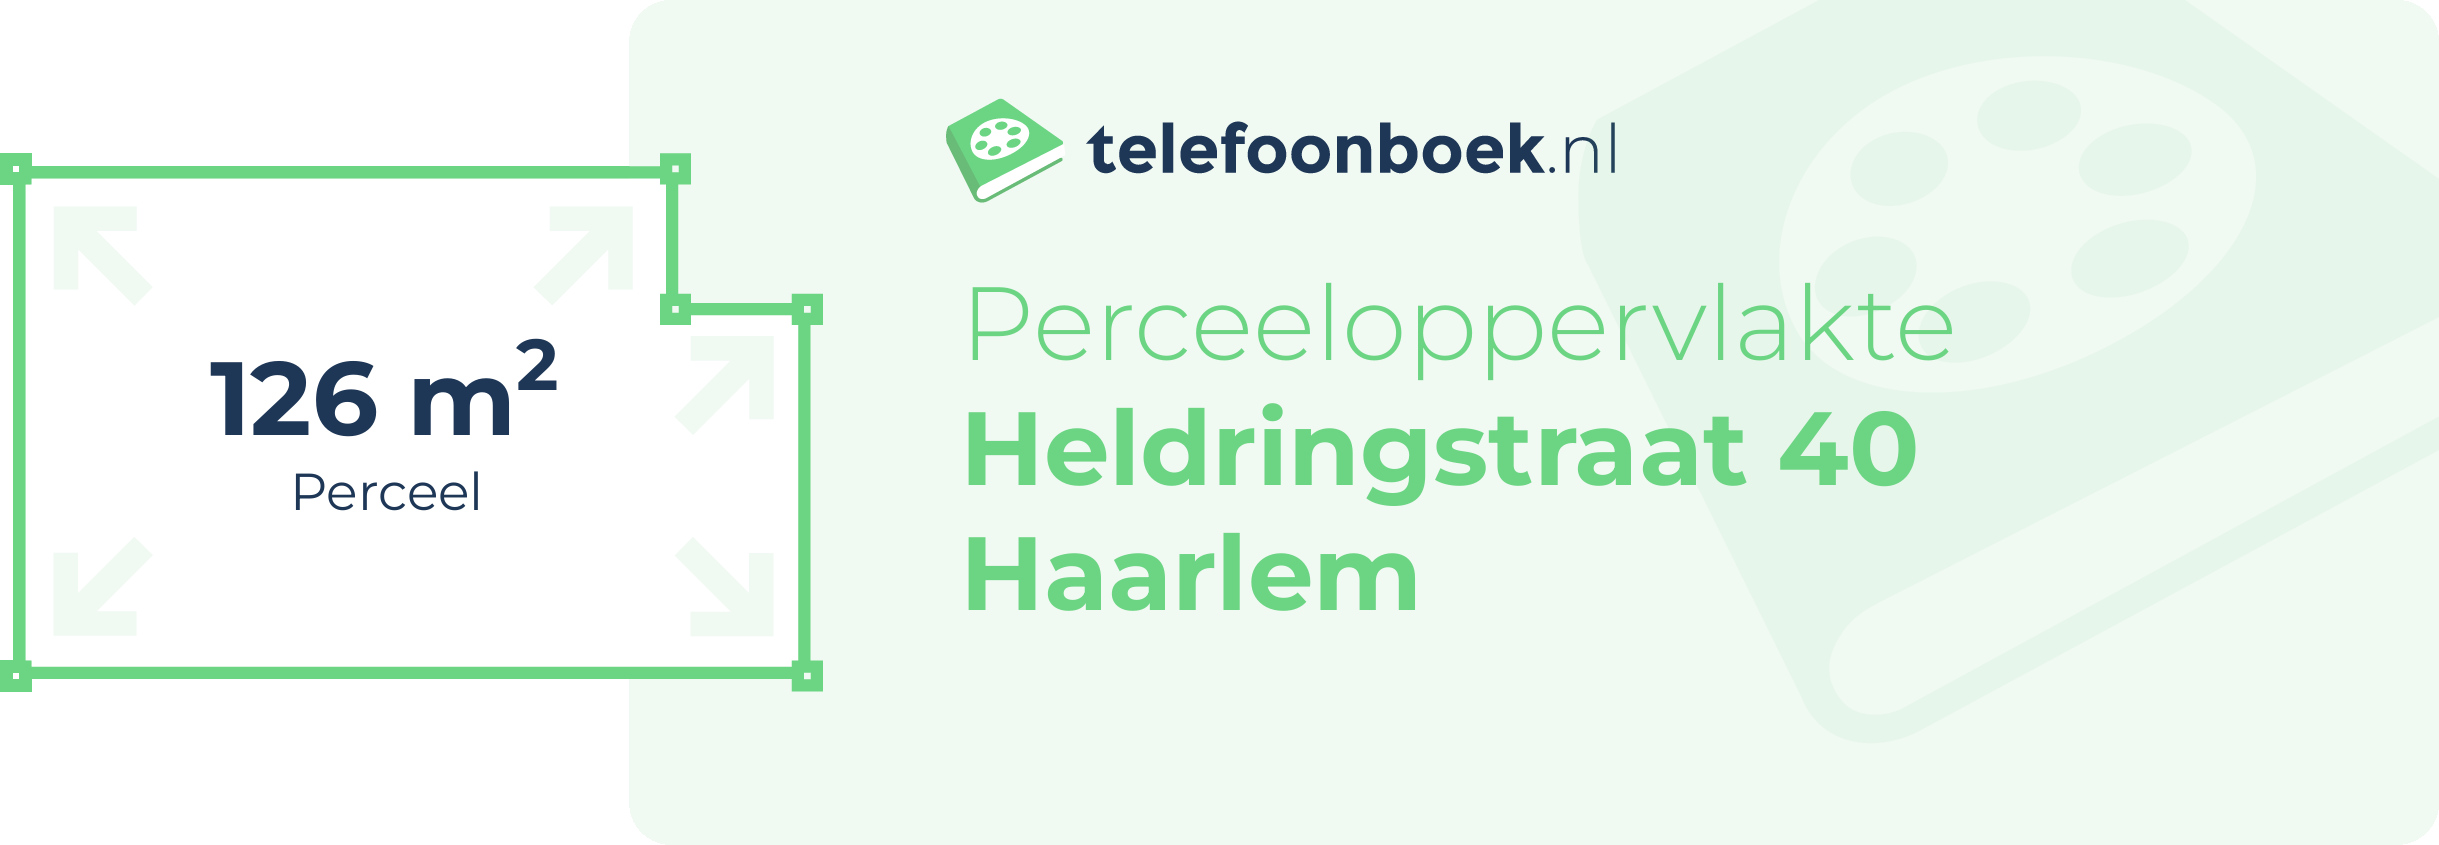 Perceeloppervlakte Heldringstraat 40 Haarlem